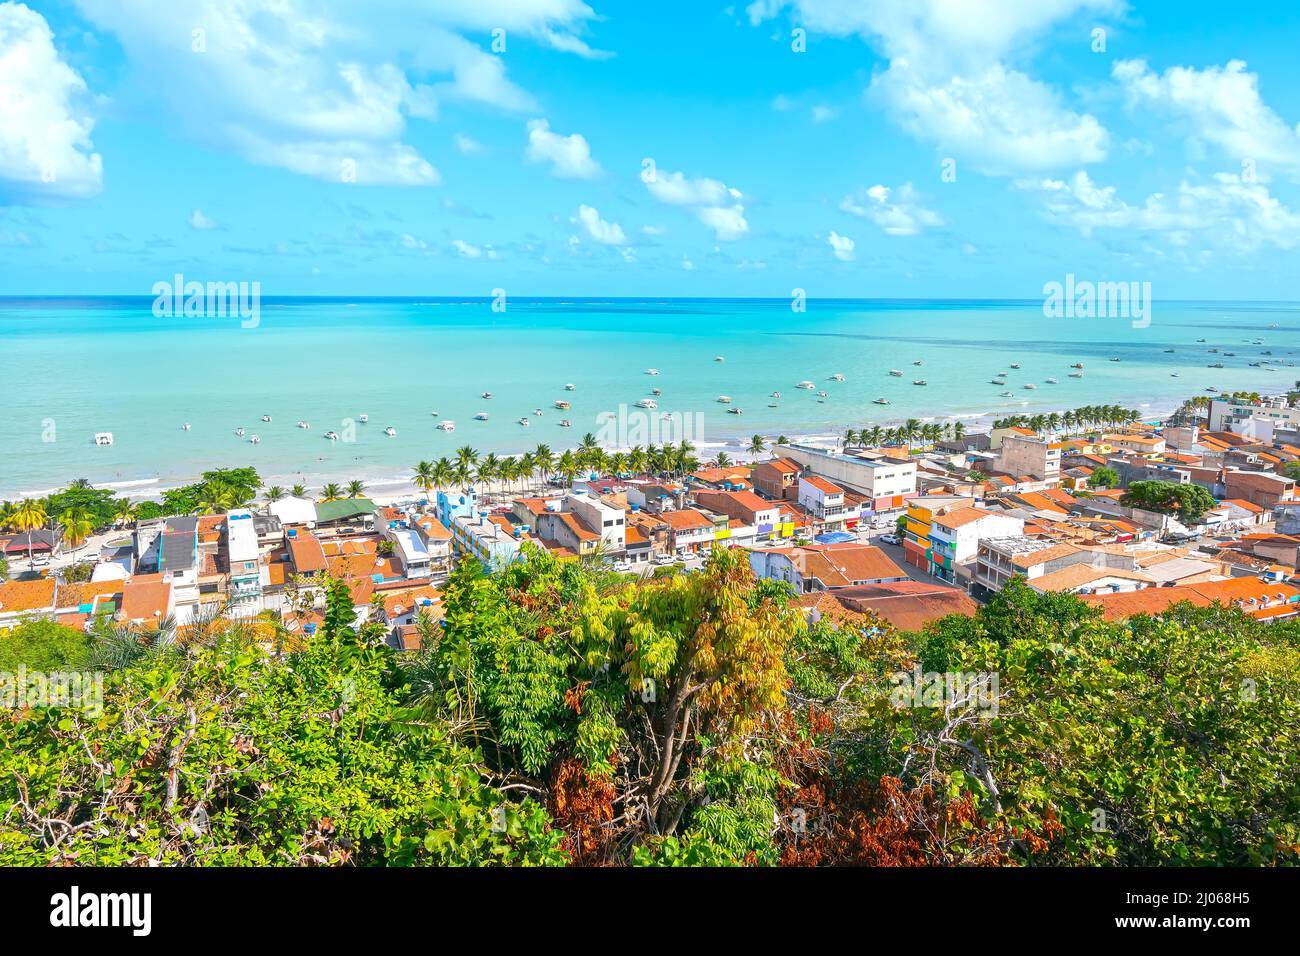 Vue aérienne de Maragogi, AL, Brésil. Paysage de la ville et de la plage de Maragogi, célèbre destination touristique de la côte brésilienne. Banque D'Images